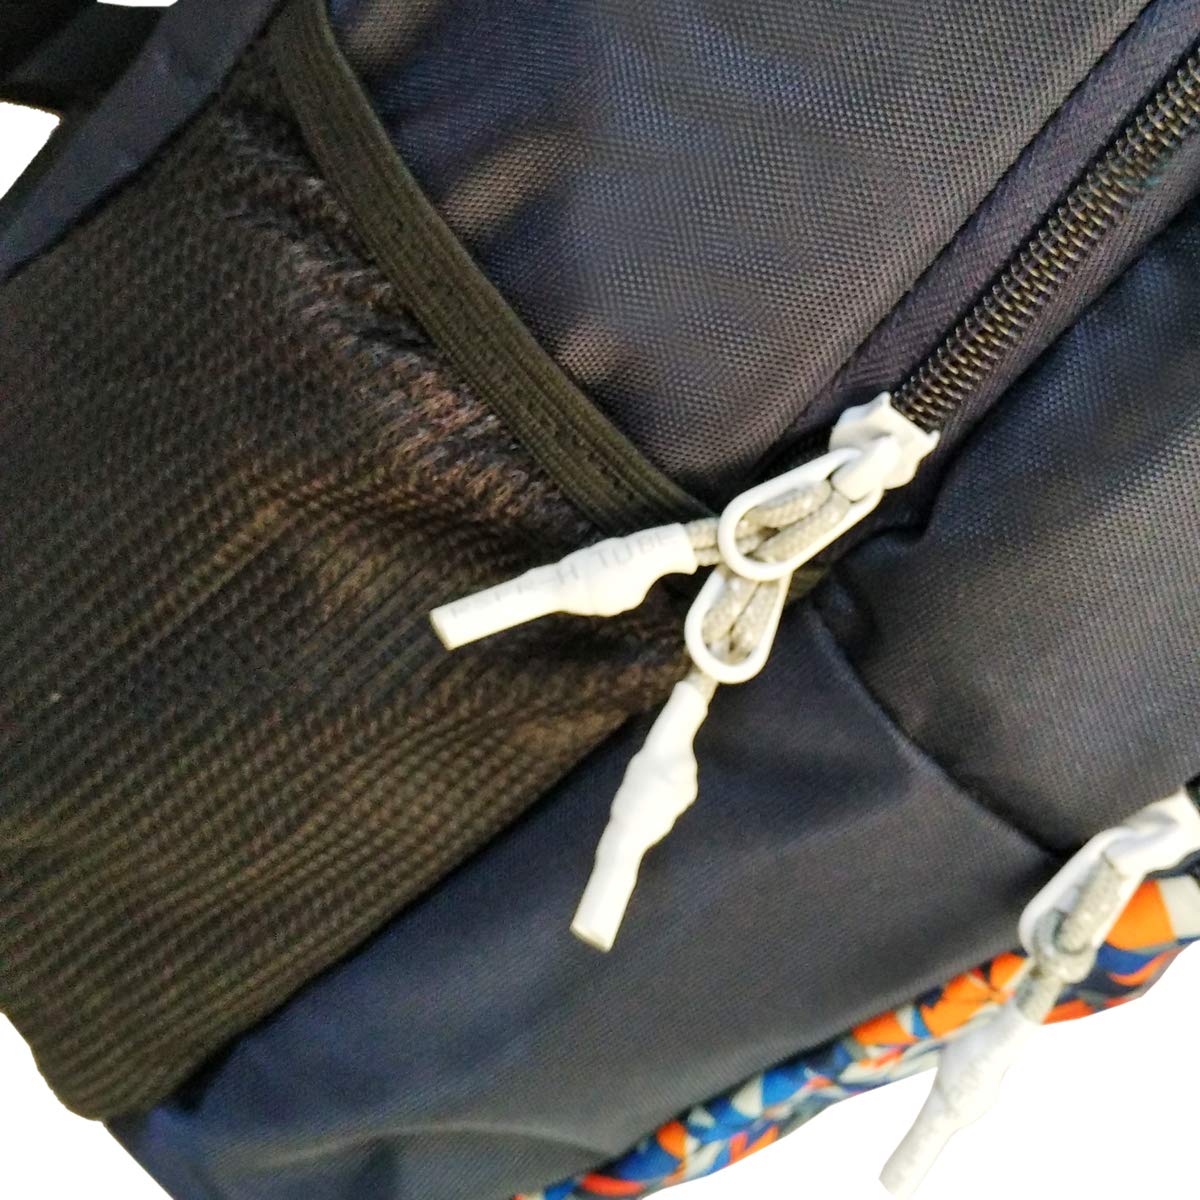 Prokick 30L Waterproof Casual Backpack | School Bag - Robo - Best Price online Prokicksports.com